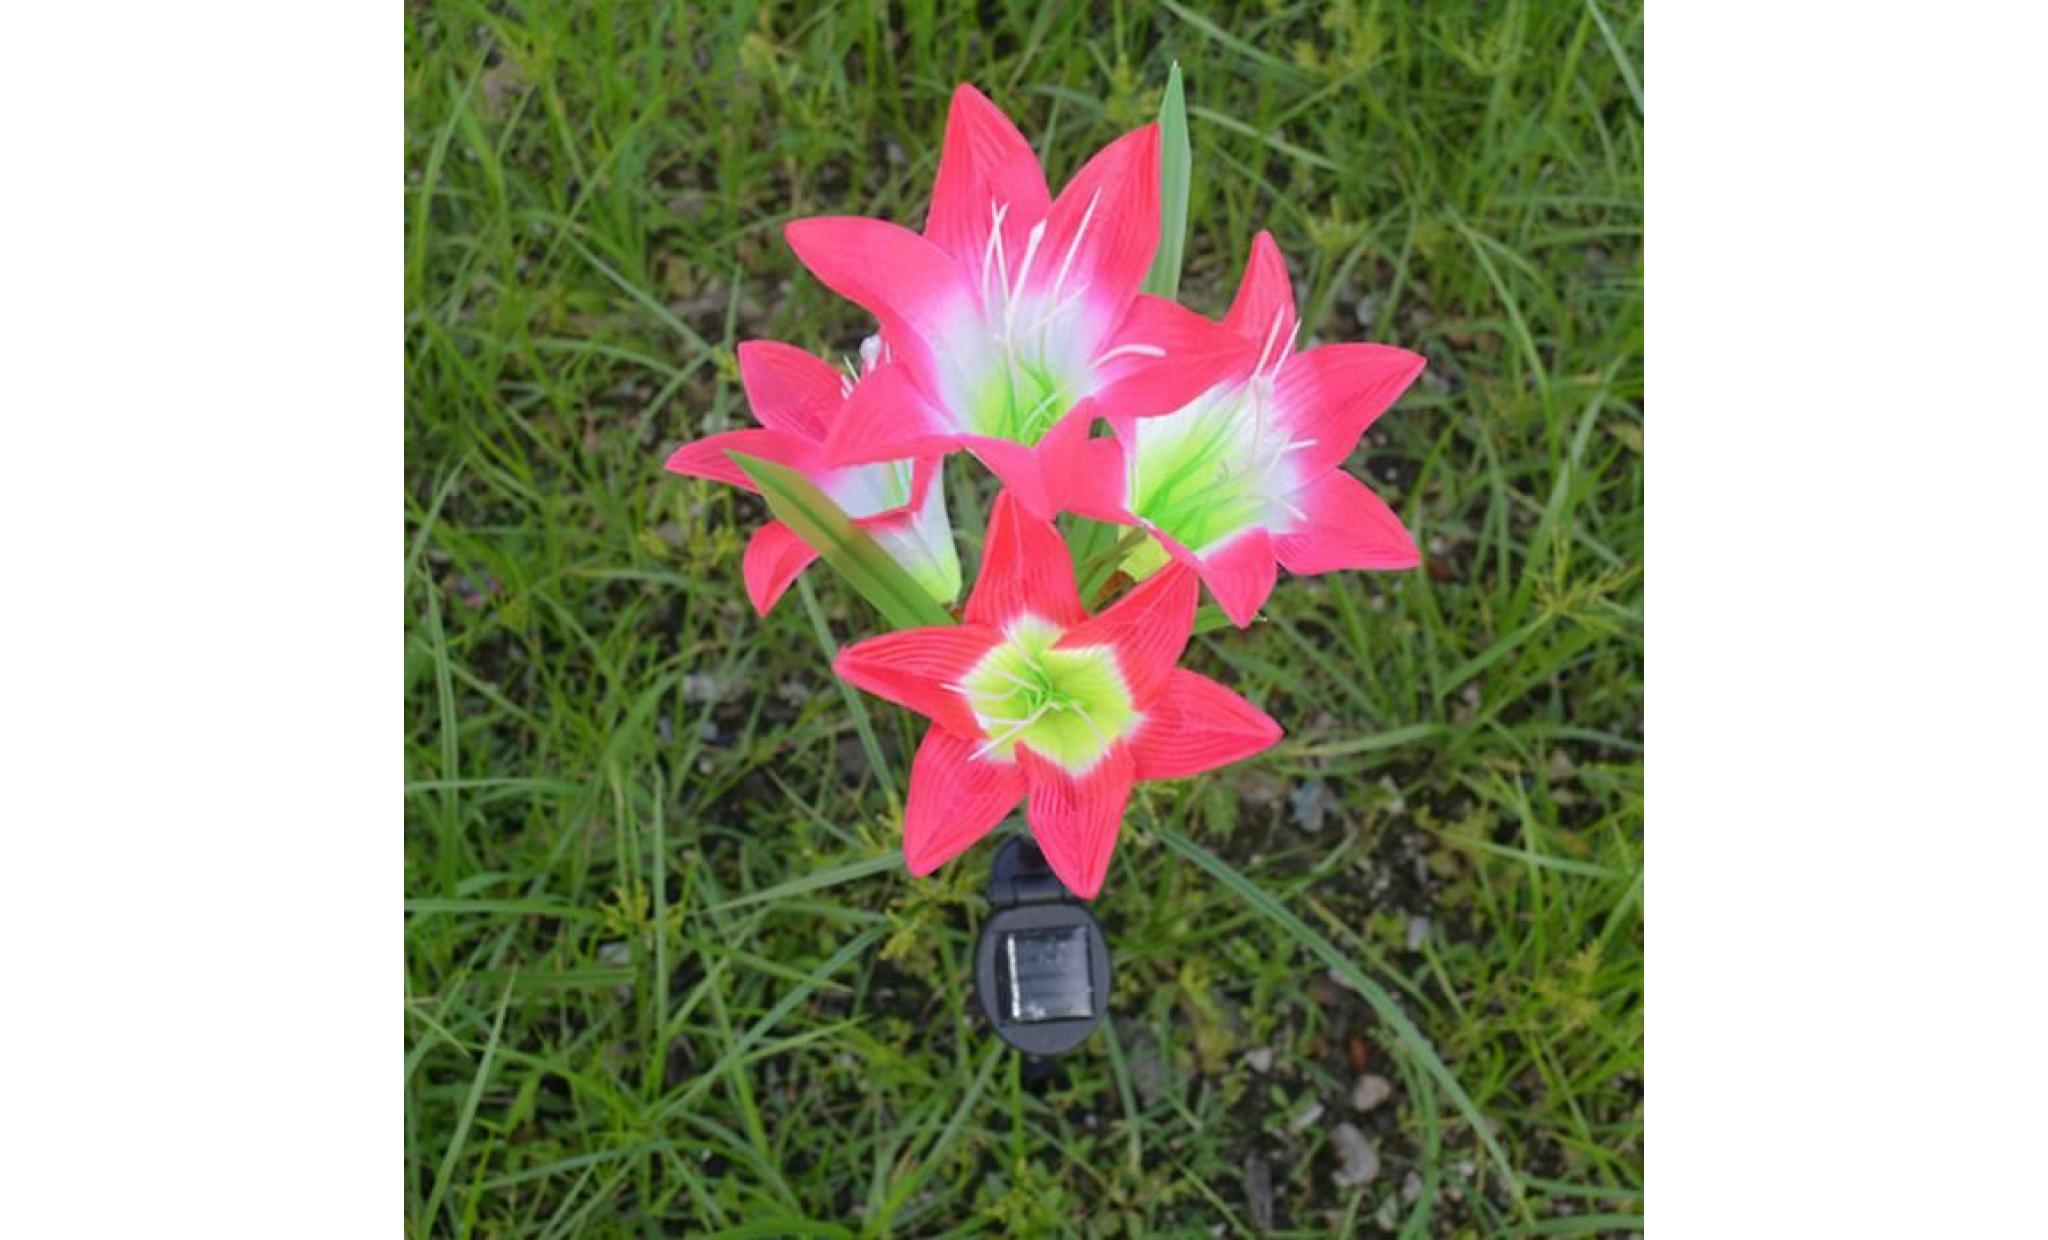 borne solaire 2 pcs fleur de lys jardin solaire actionné pieu lumières lumières fleurs artificielles led lumière #si 130 pas cher